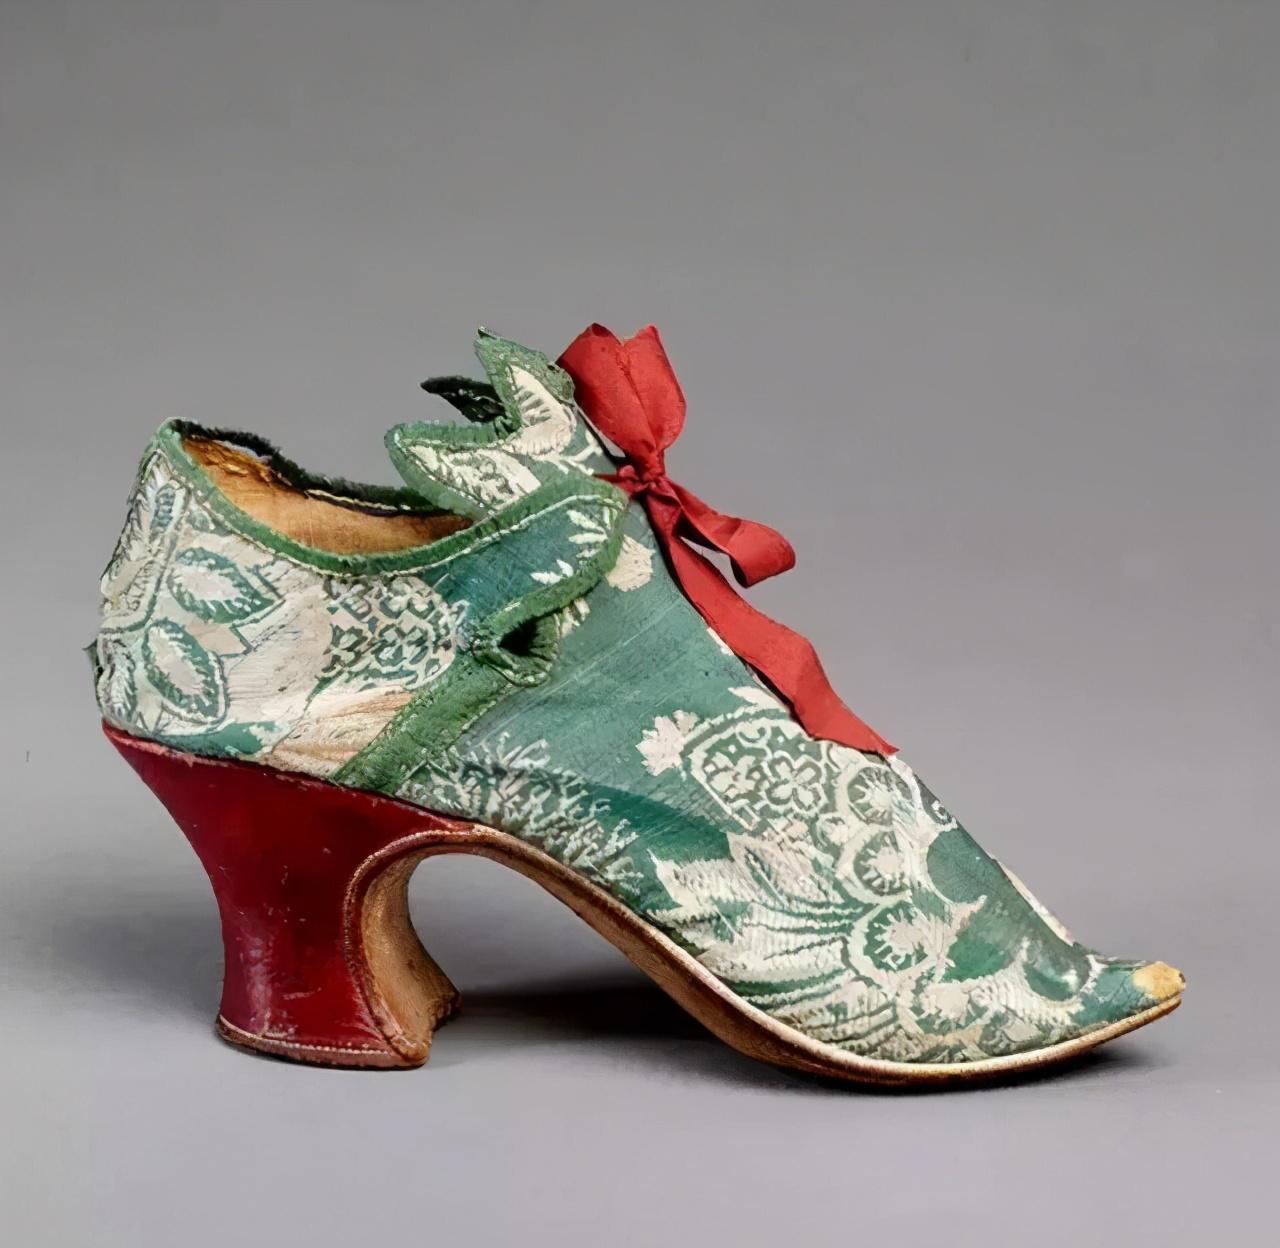 带你看看中国第一家古鞋文化博物馆